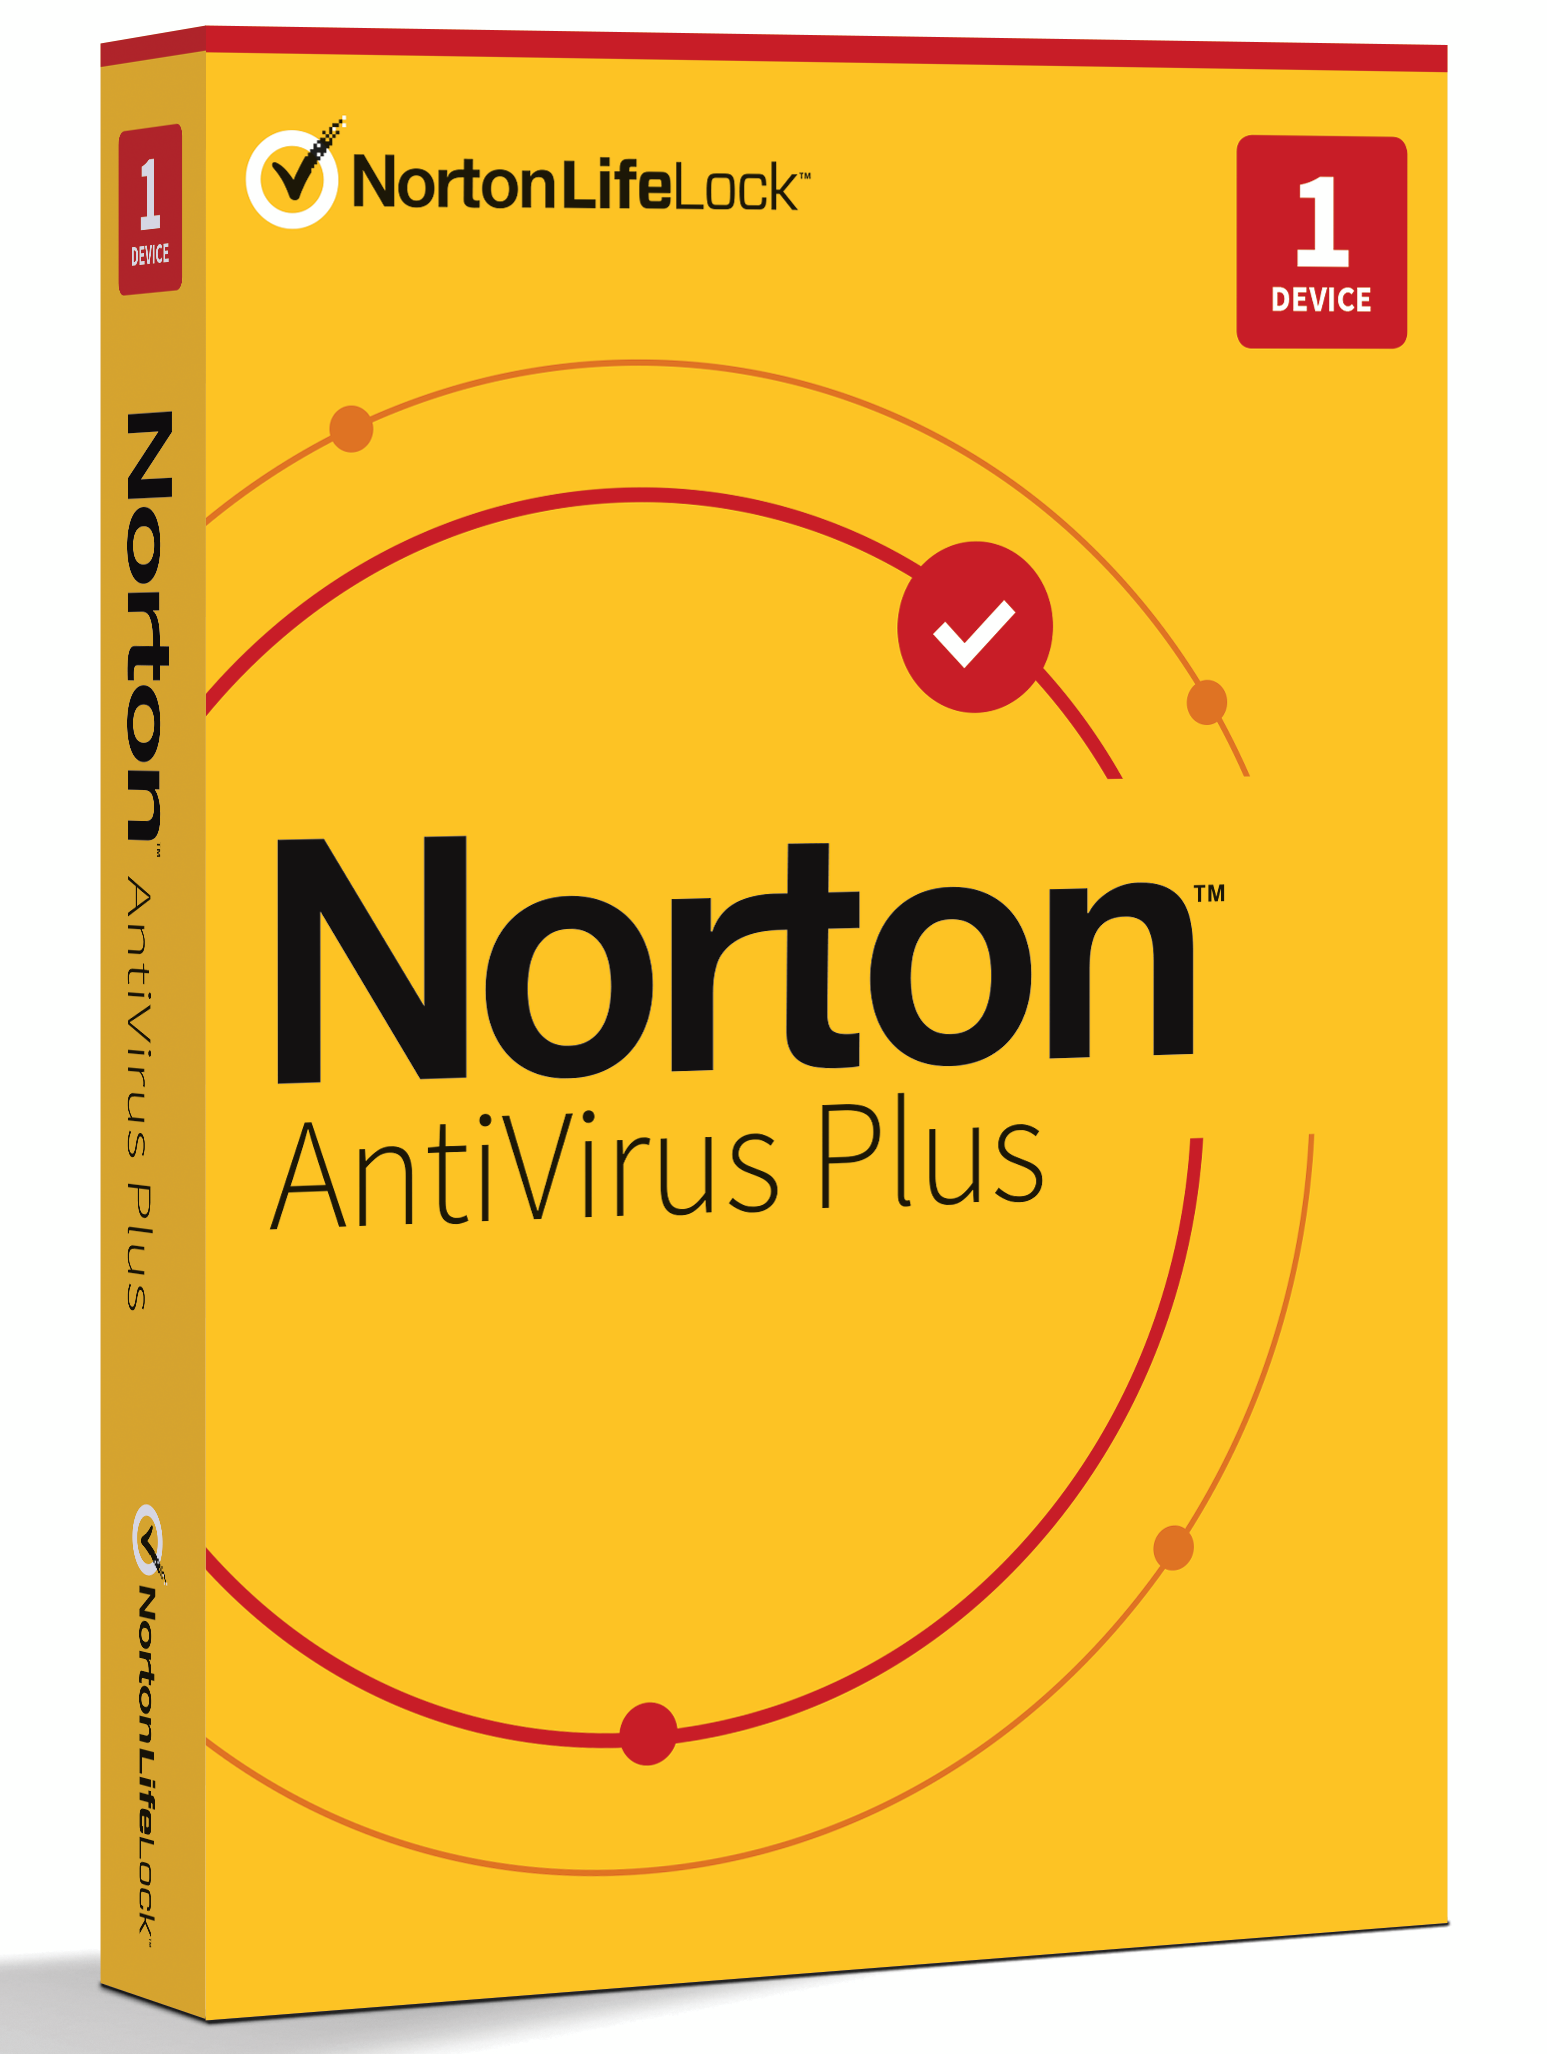 where to buy norton antivirus